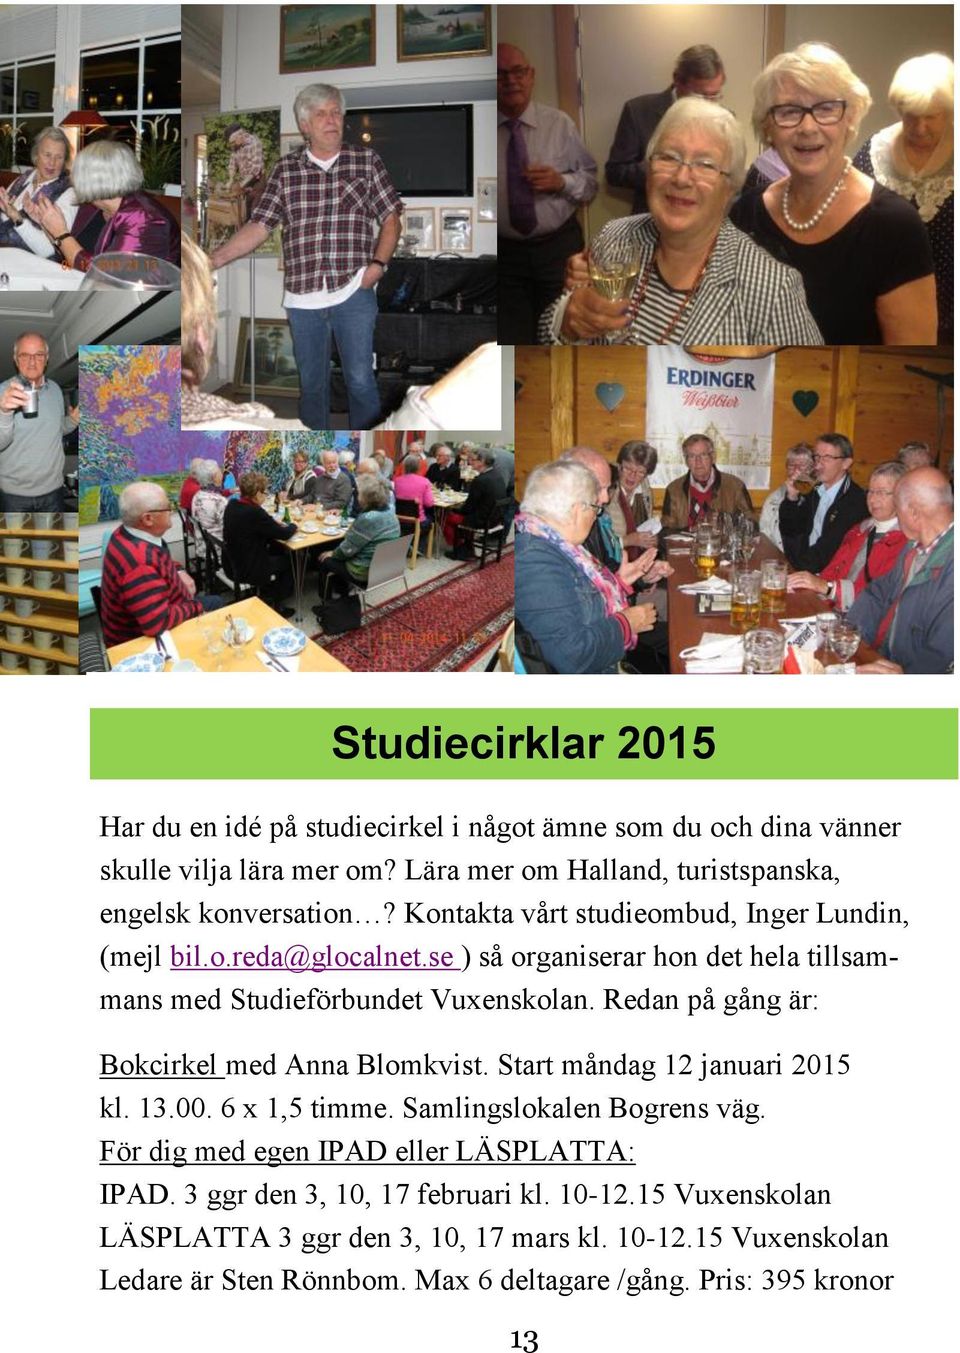 Redan på gång är: Bokcirkel med Anna Blomkvist. Start måndag 12 januari 2015 kl. 13.00. 6 x 1,5 timme. Samlingslokalen Bogrens väg.